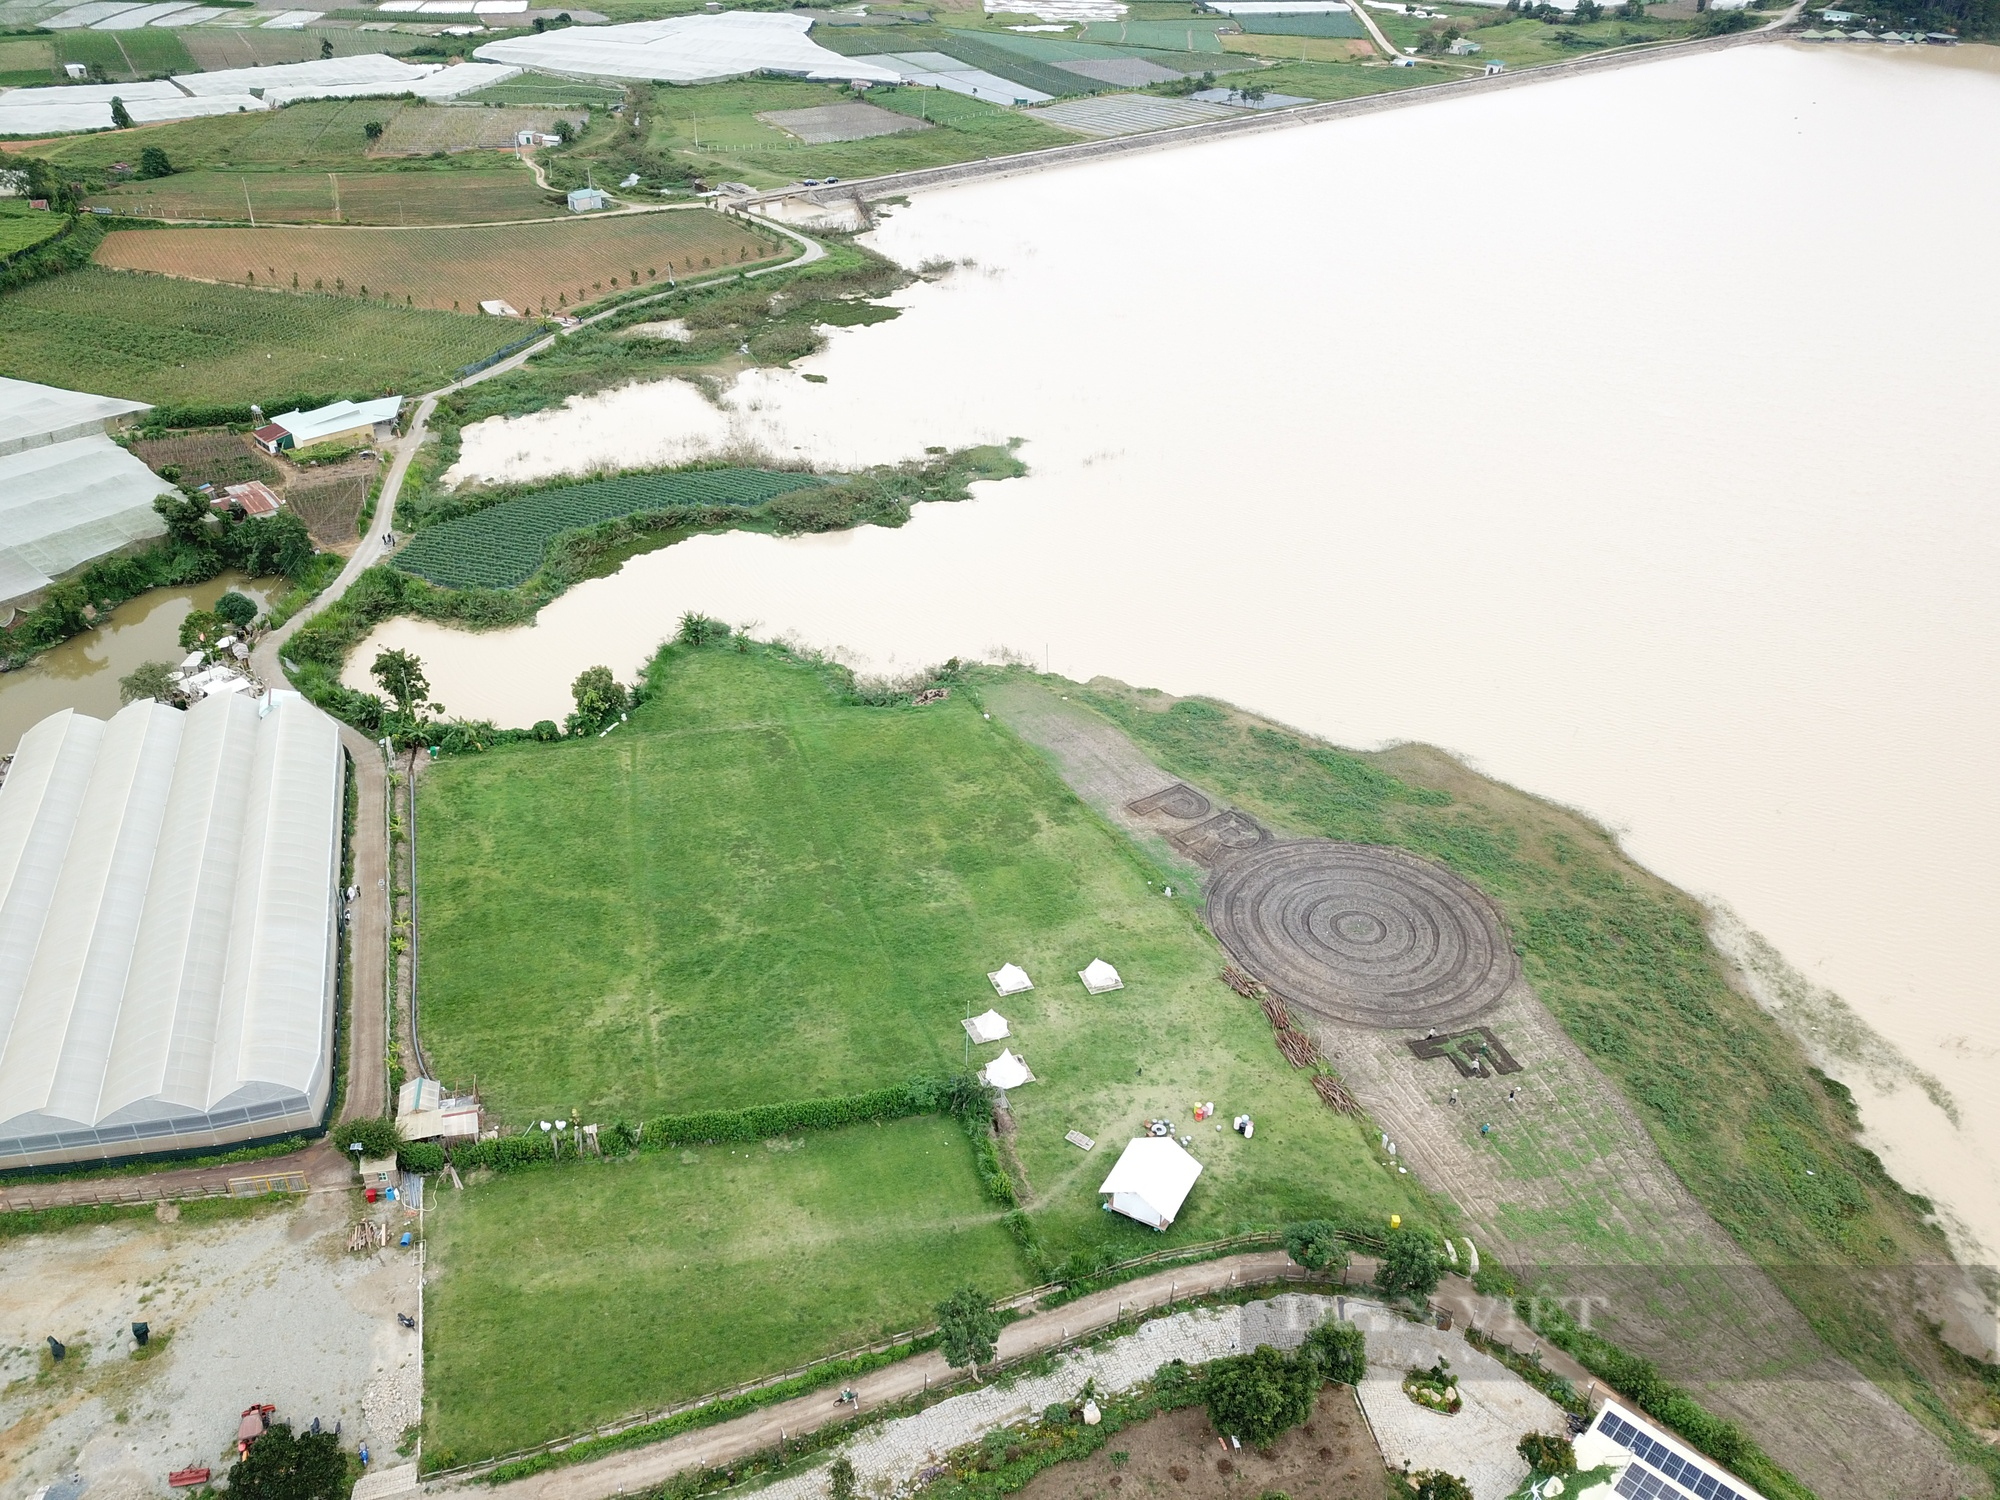 Hồ Próh bị xâm lấn nghiêm trọng, huyện Đơn Dương xác nhận chính xác và sẽ xử lý không có vùng cấm - Ảnh 2.